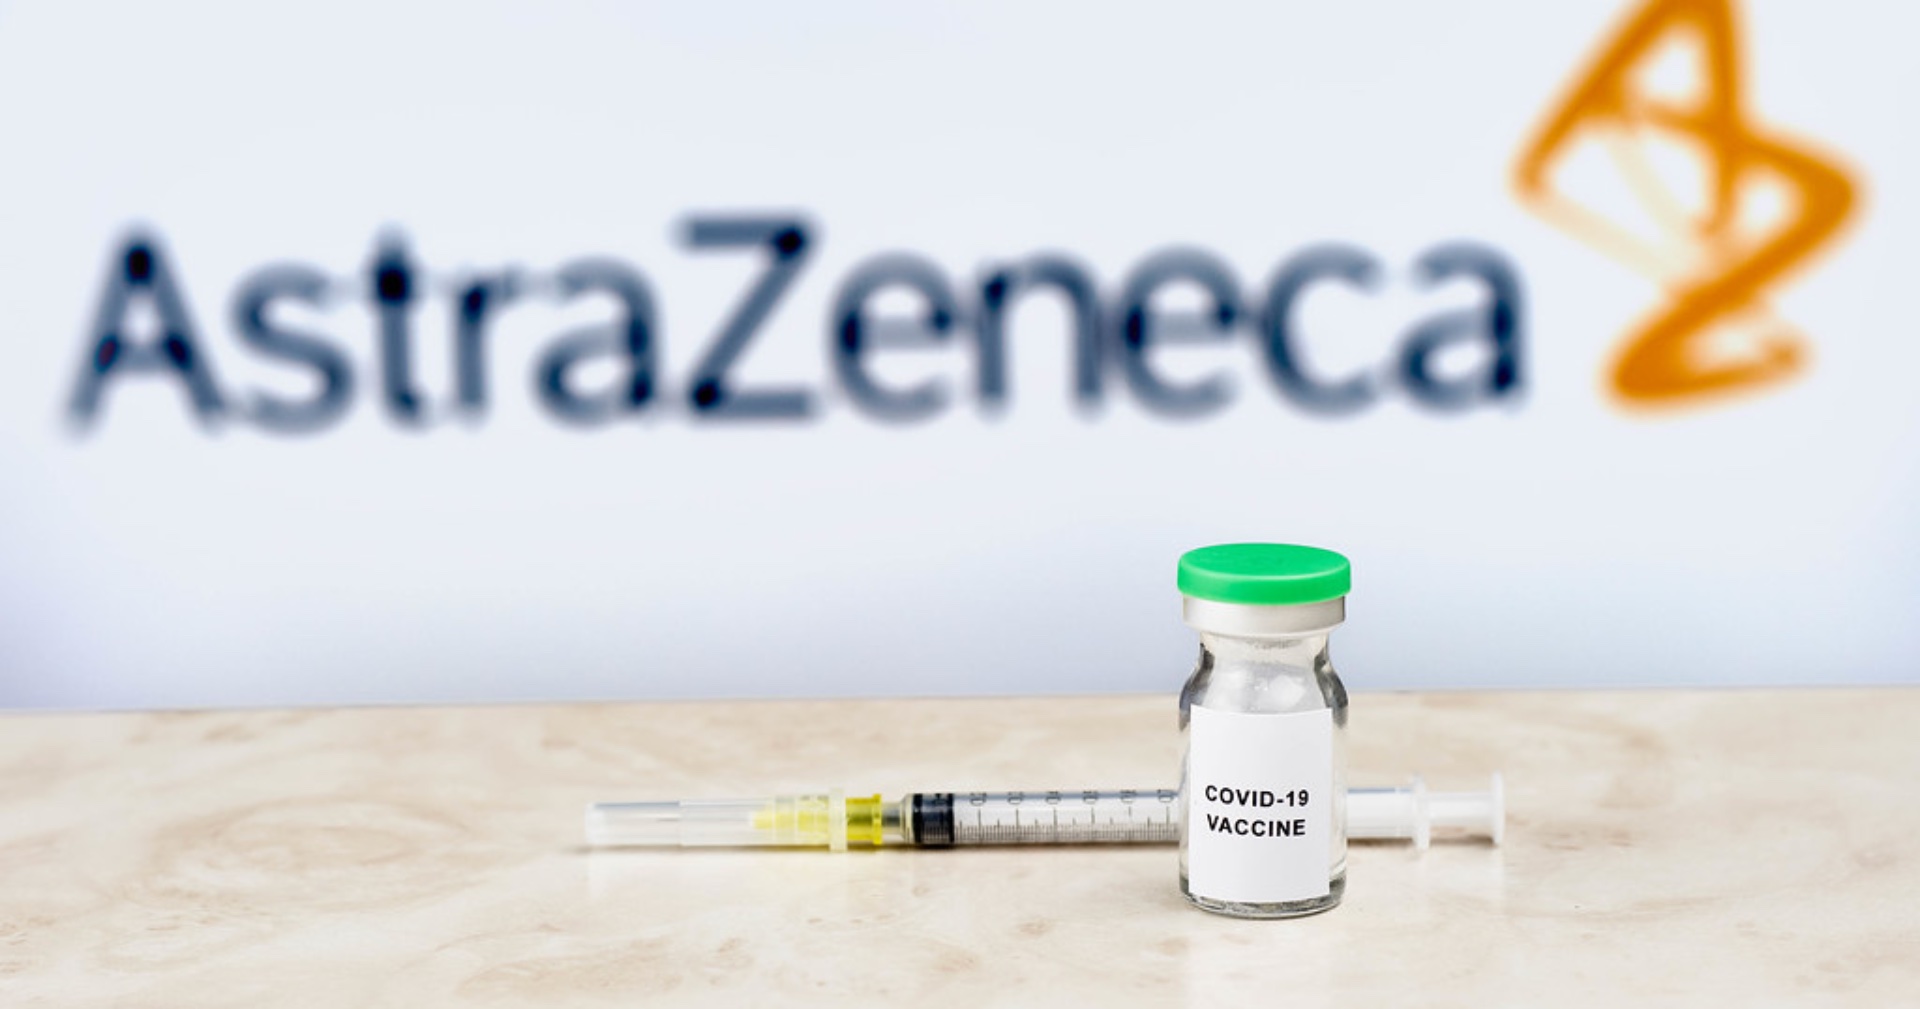 หน่วยงานสหราชอาณาจักรแนะ บุคคลอายุน้อยกว่า 30 ปีเลือกใช้วัคซีนอื่นนอกจาก AstraZeneca ได้